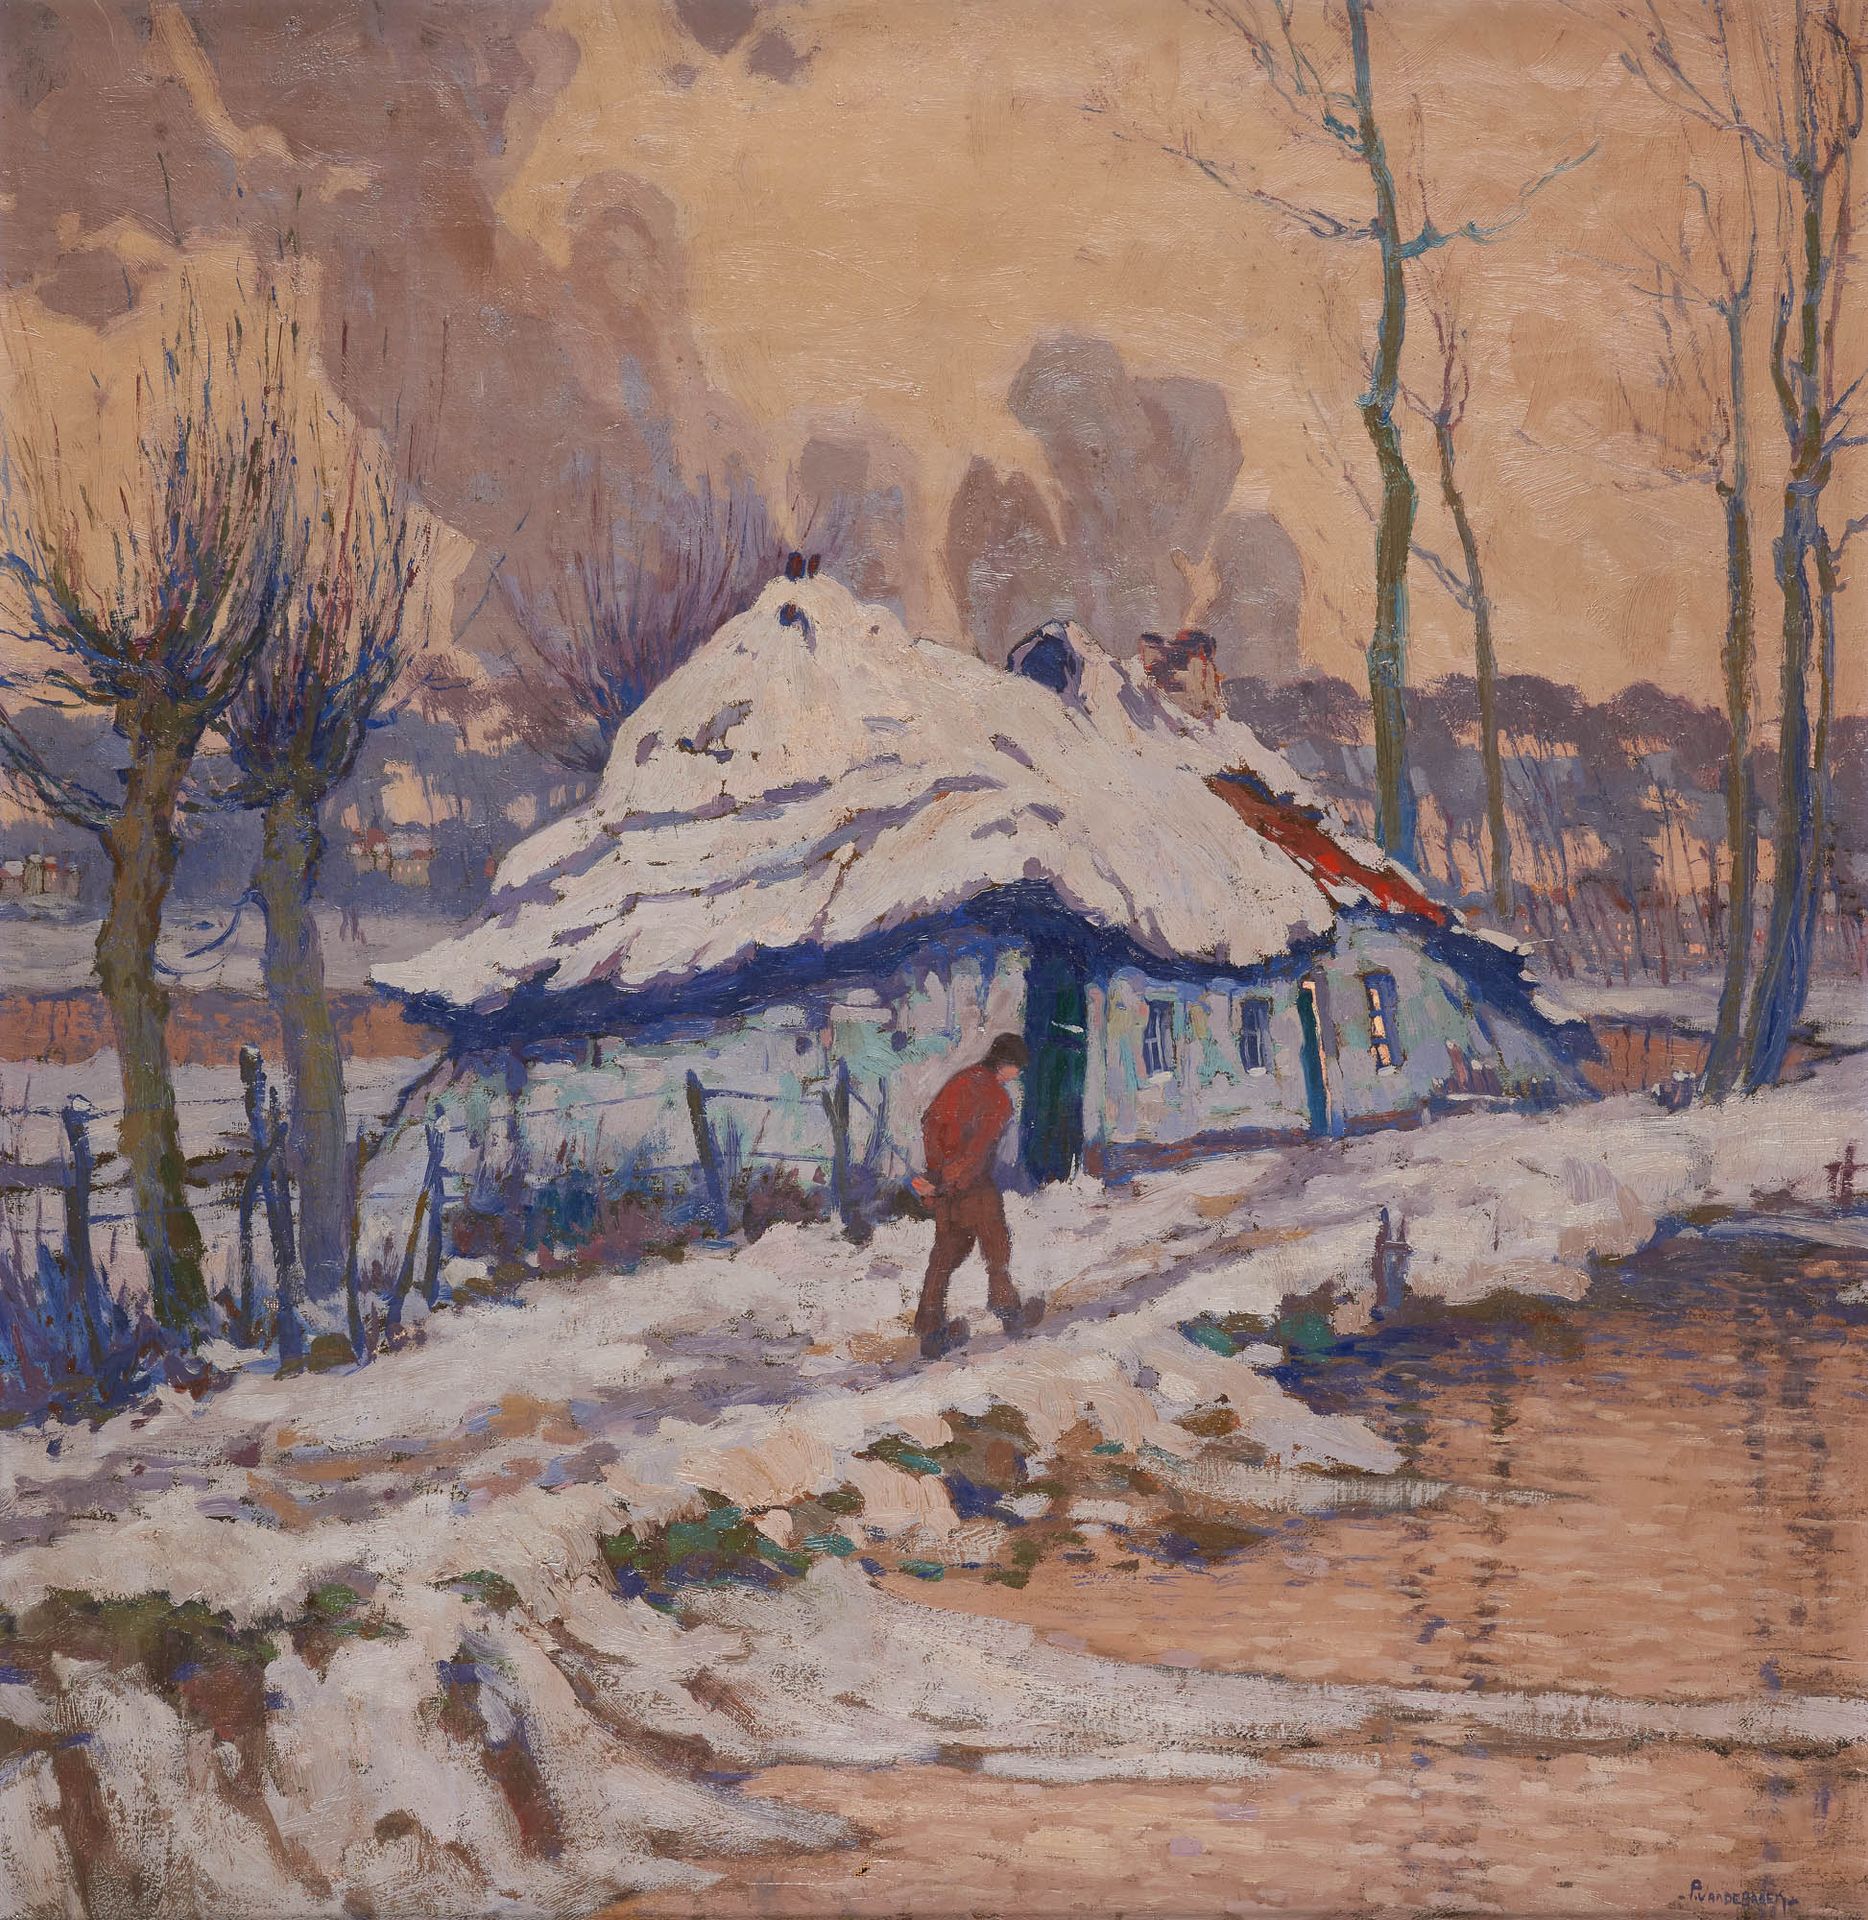 Pol VAN DE BROECK École belge (1887-1927) Oil on canvas: "Snow effect".

Signed:&hellip;